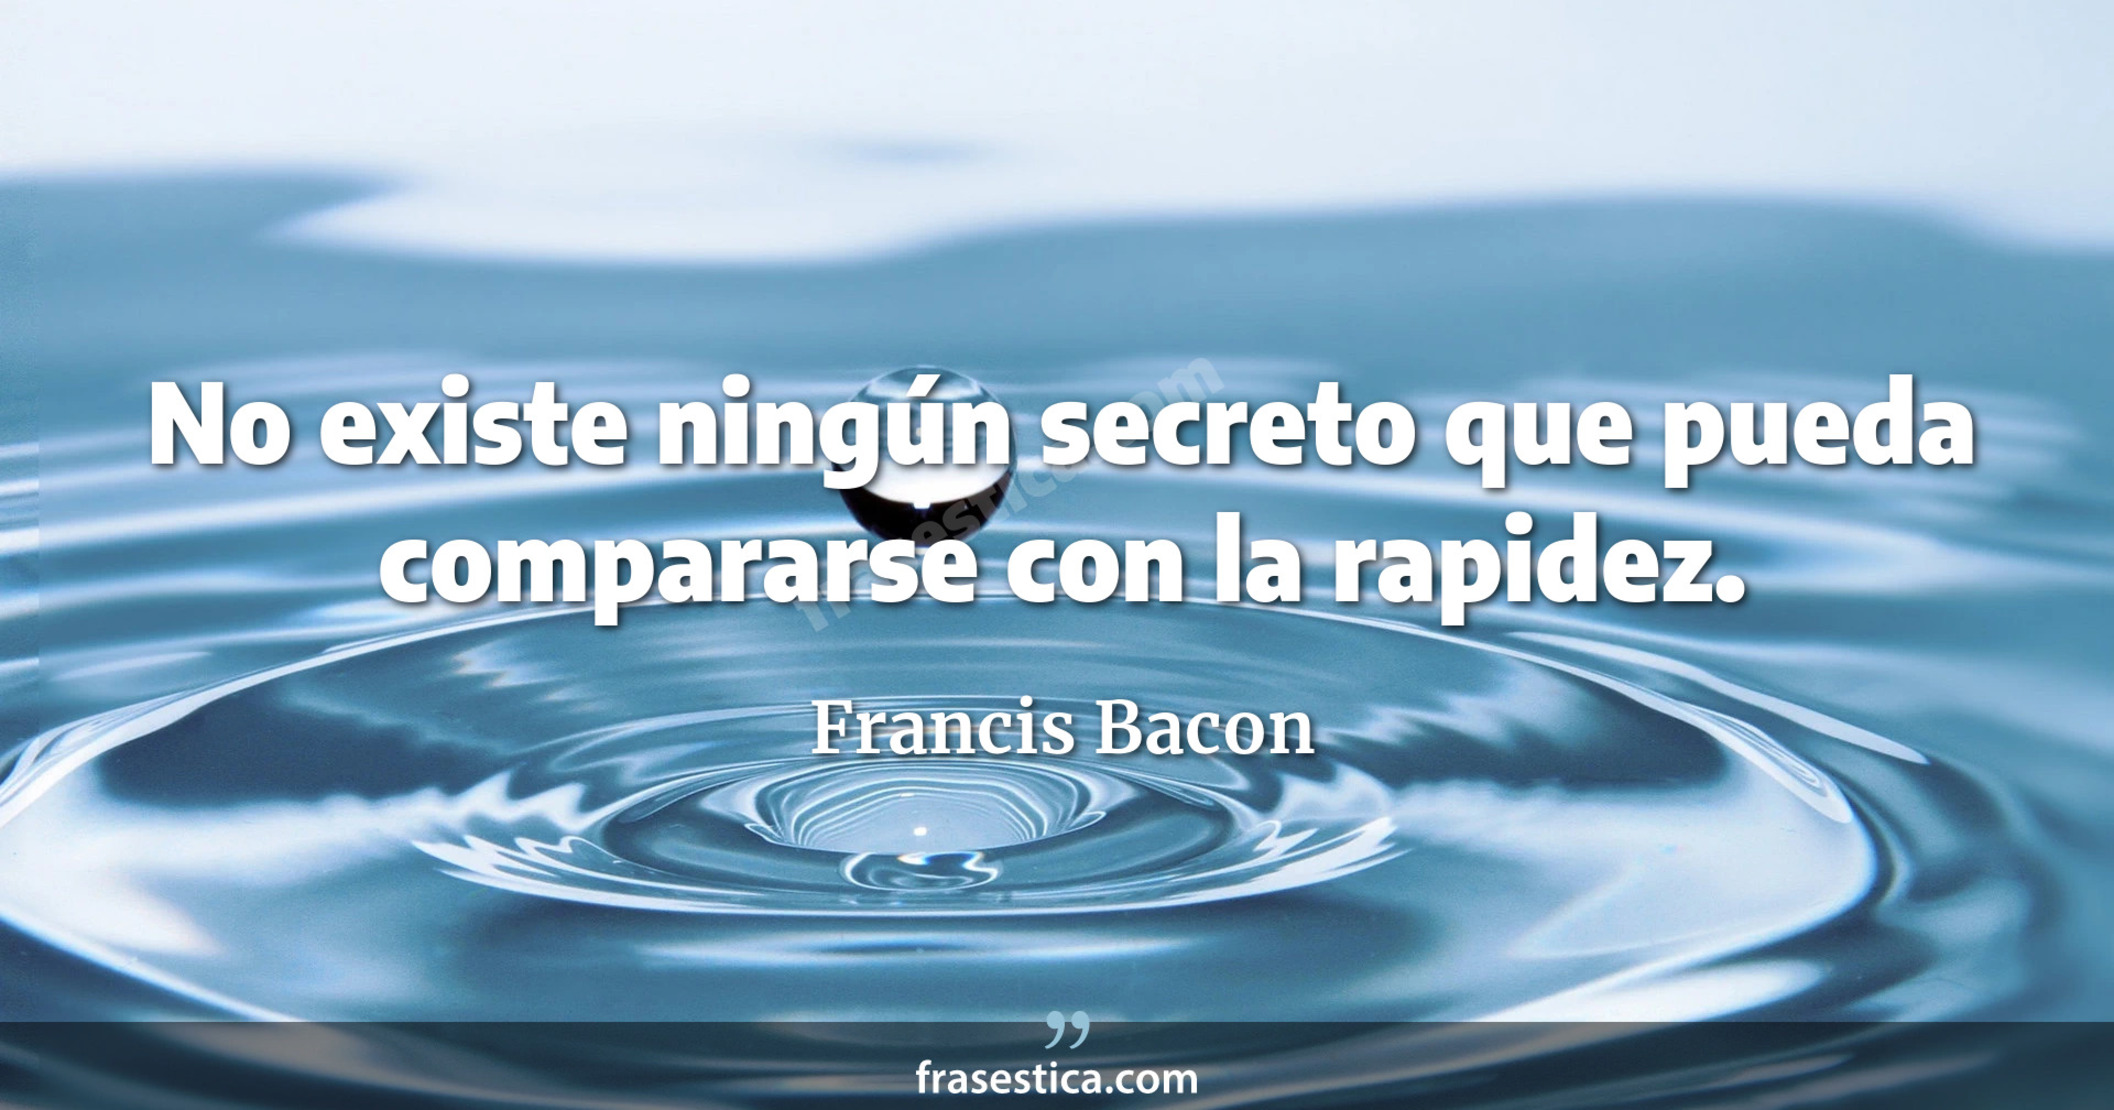 No existe ningún secreto que pueda compararse con la rapidez. - Francis Bacon